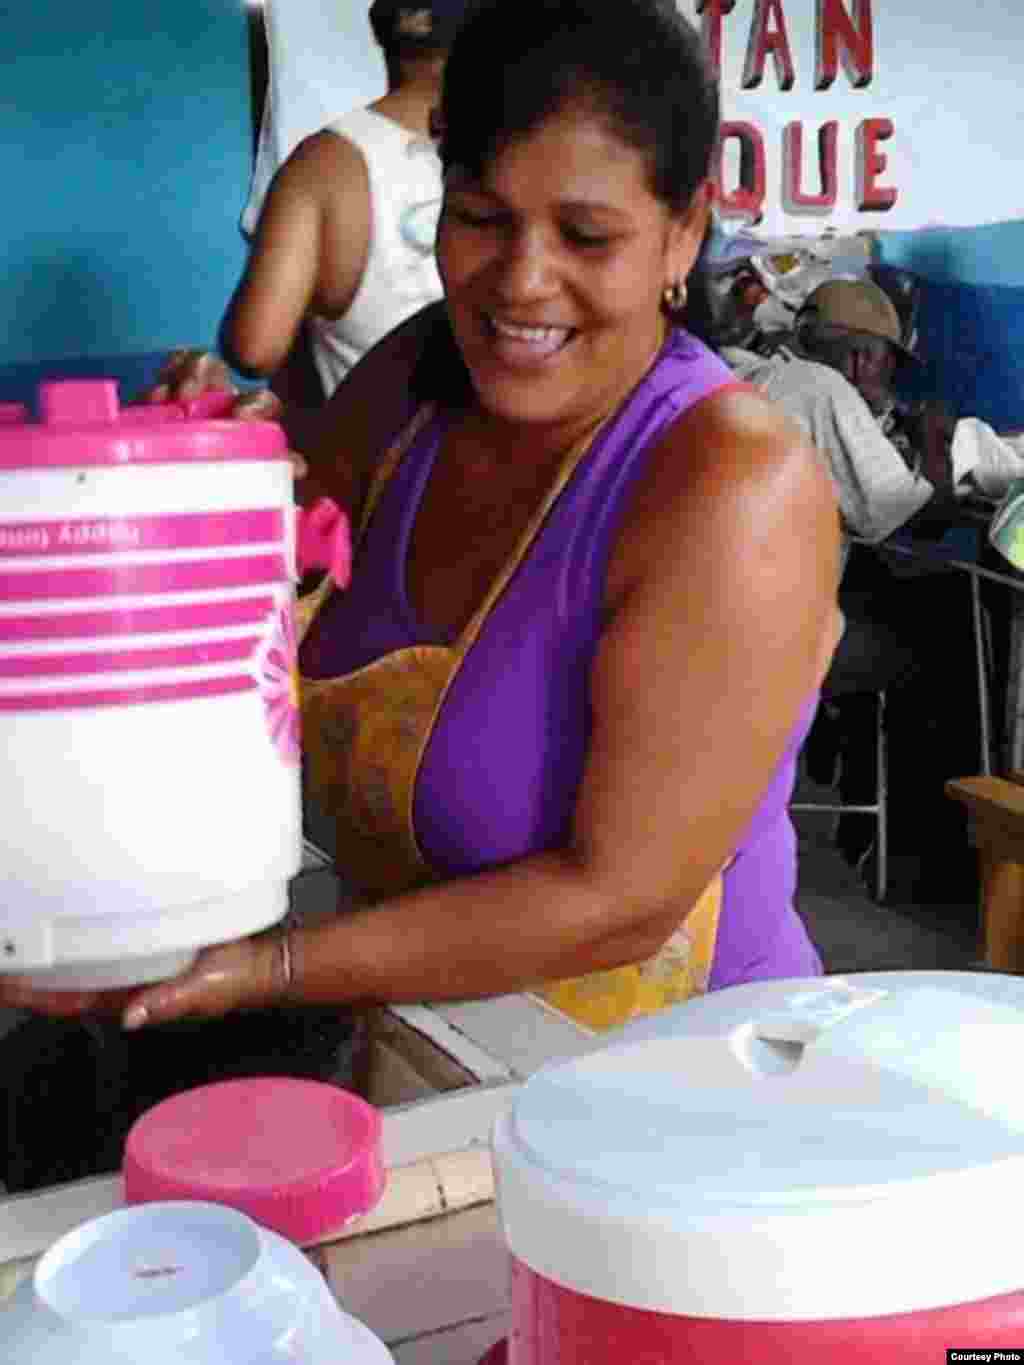 Activista sirve a necesitados en el Proyecto "Capitan Tondique", Colón, Matanzas.